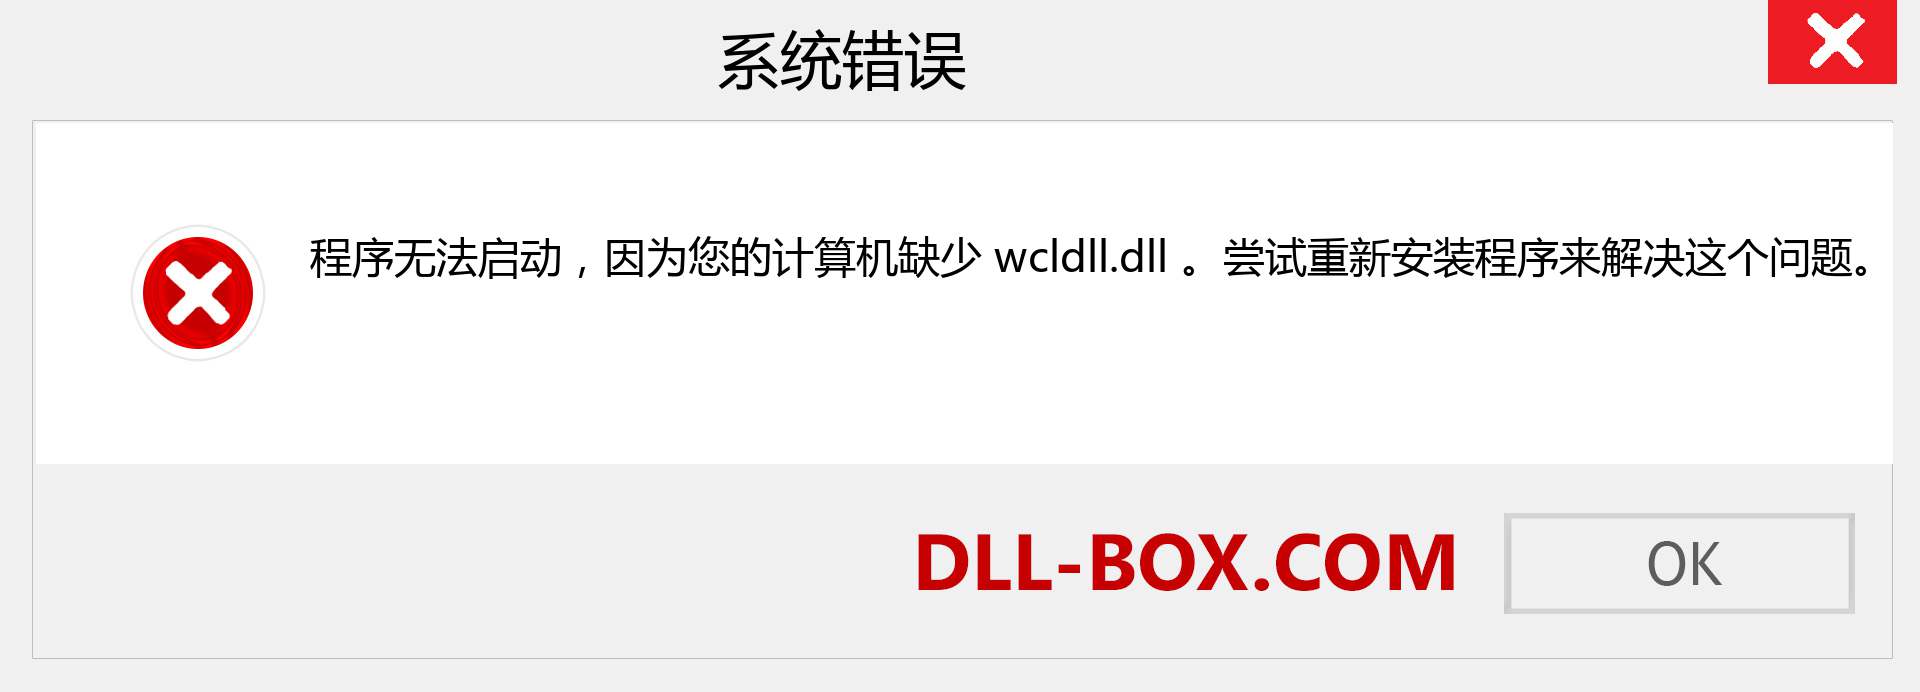 wcldll.dll 文件丢失？。 适用于 Windows 7、8、10 的下载 - 修复 Windows、照片、图像上的 wcldll dll 丢失错误